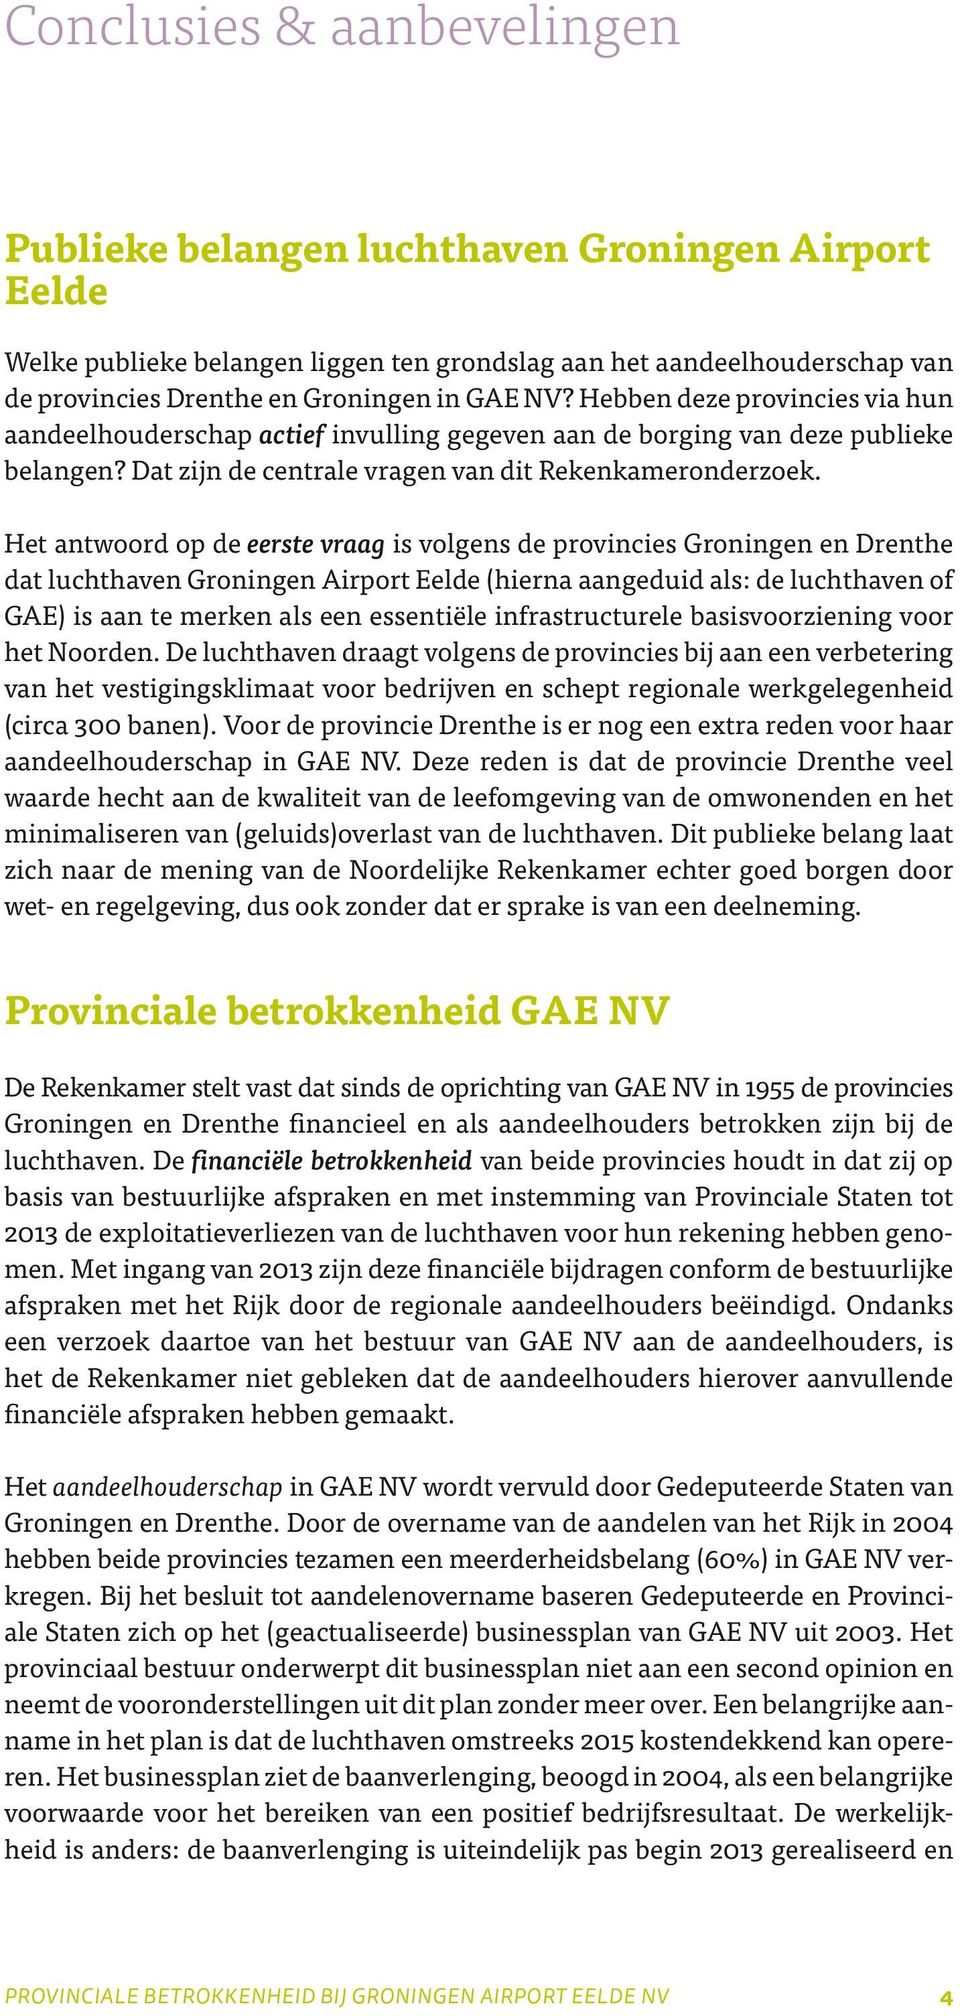 Het antwoord op de eerste vraag is volgens de provincies Groningen en Drenthe dat luchthaven Groningen Airport Eelde (hierna aangeduid als: de luchthaven of GAE) is aan te merken als een essentiële